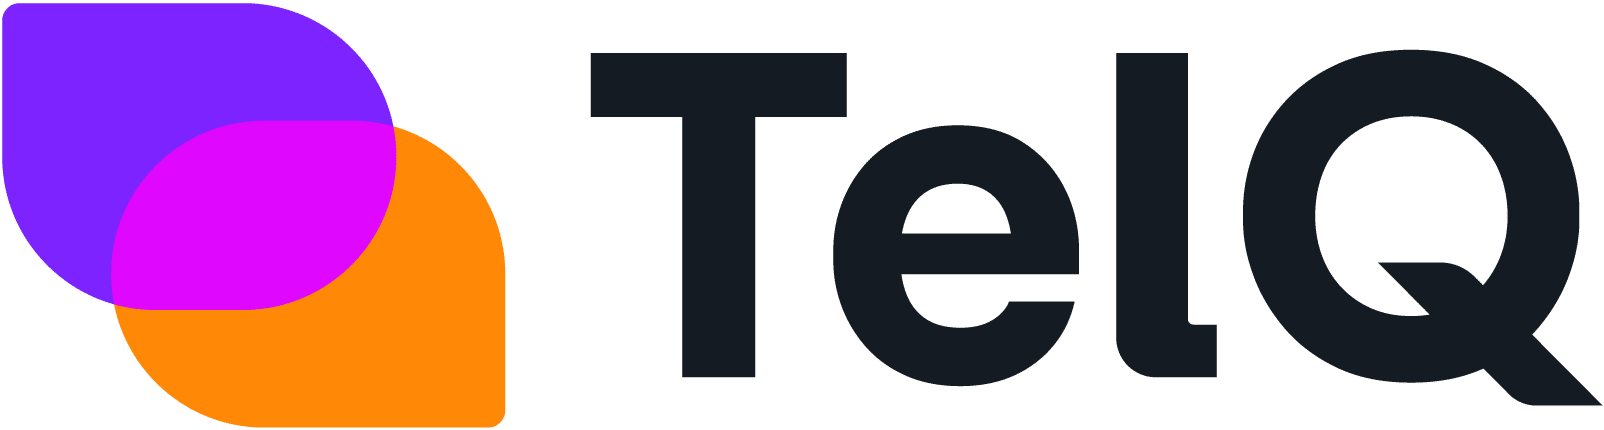 TelQ Telecom software logo